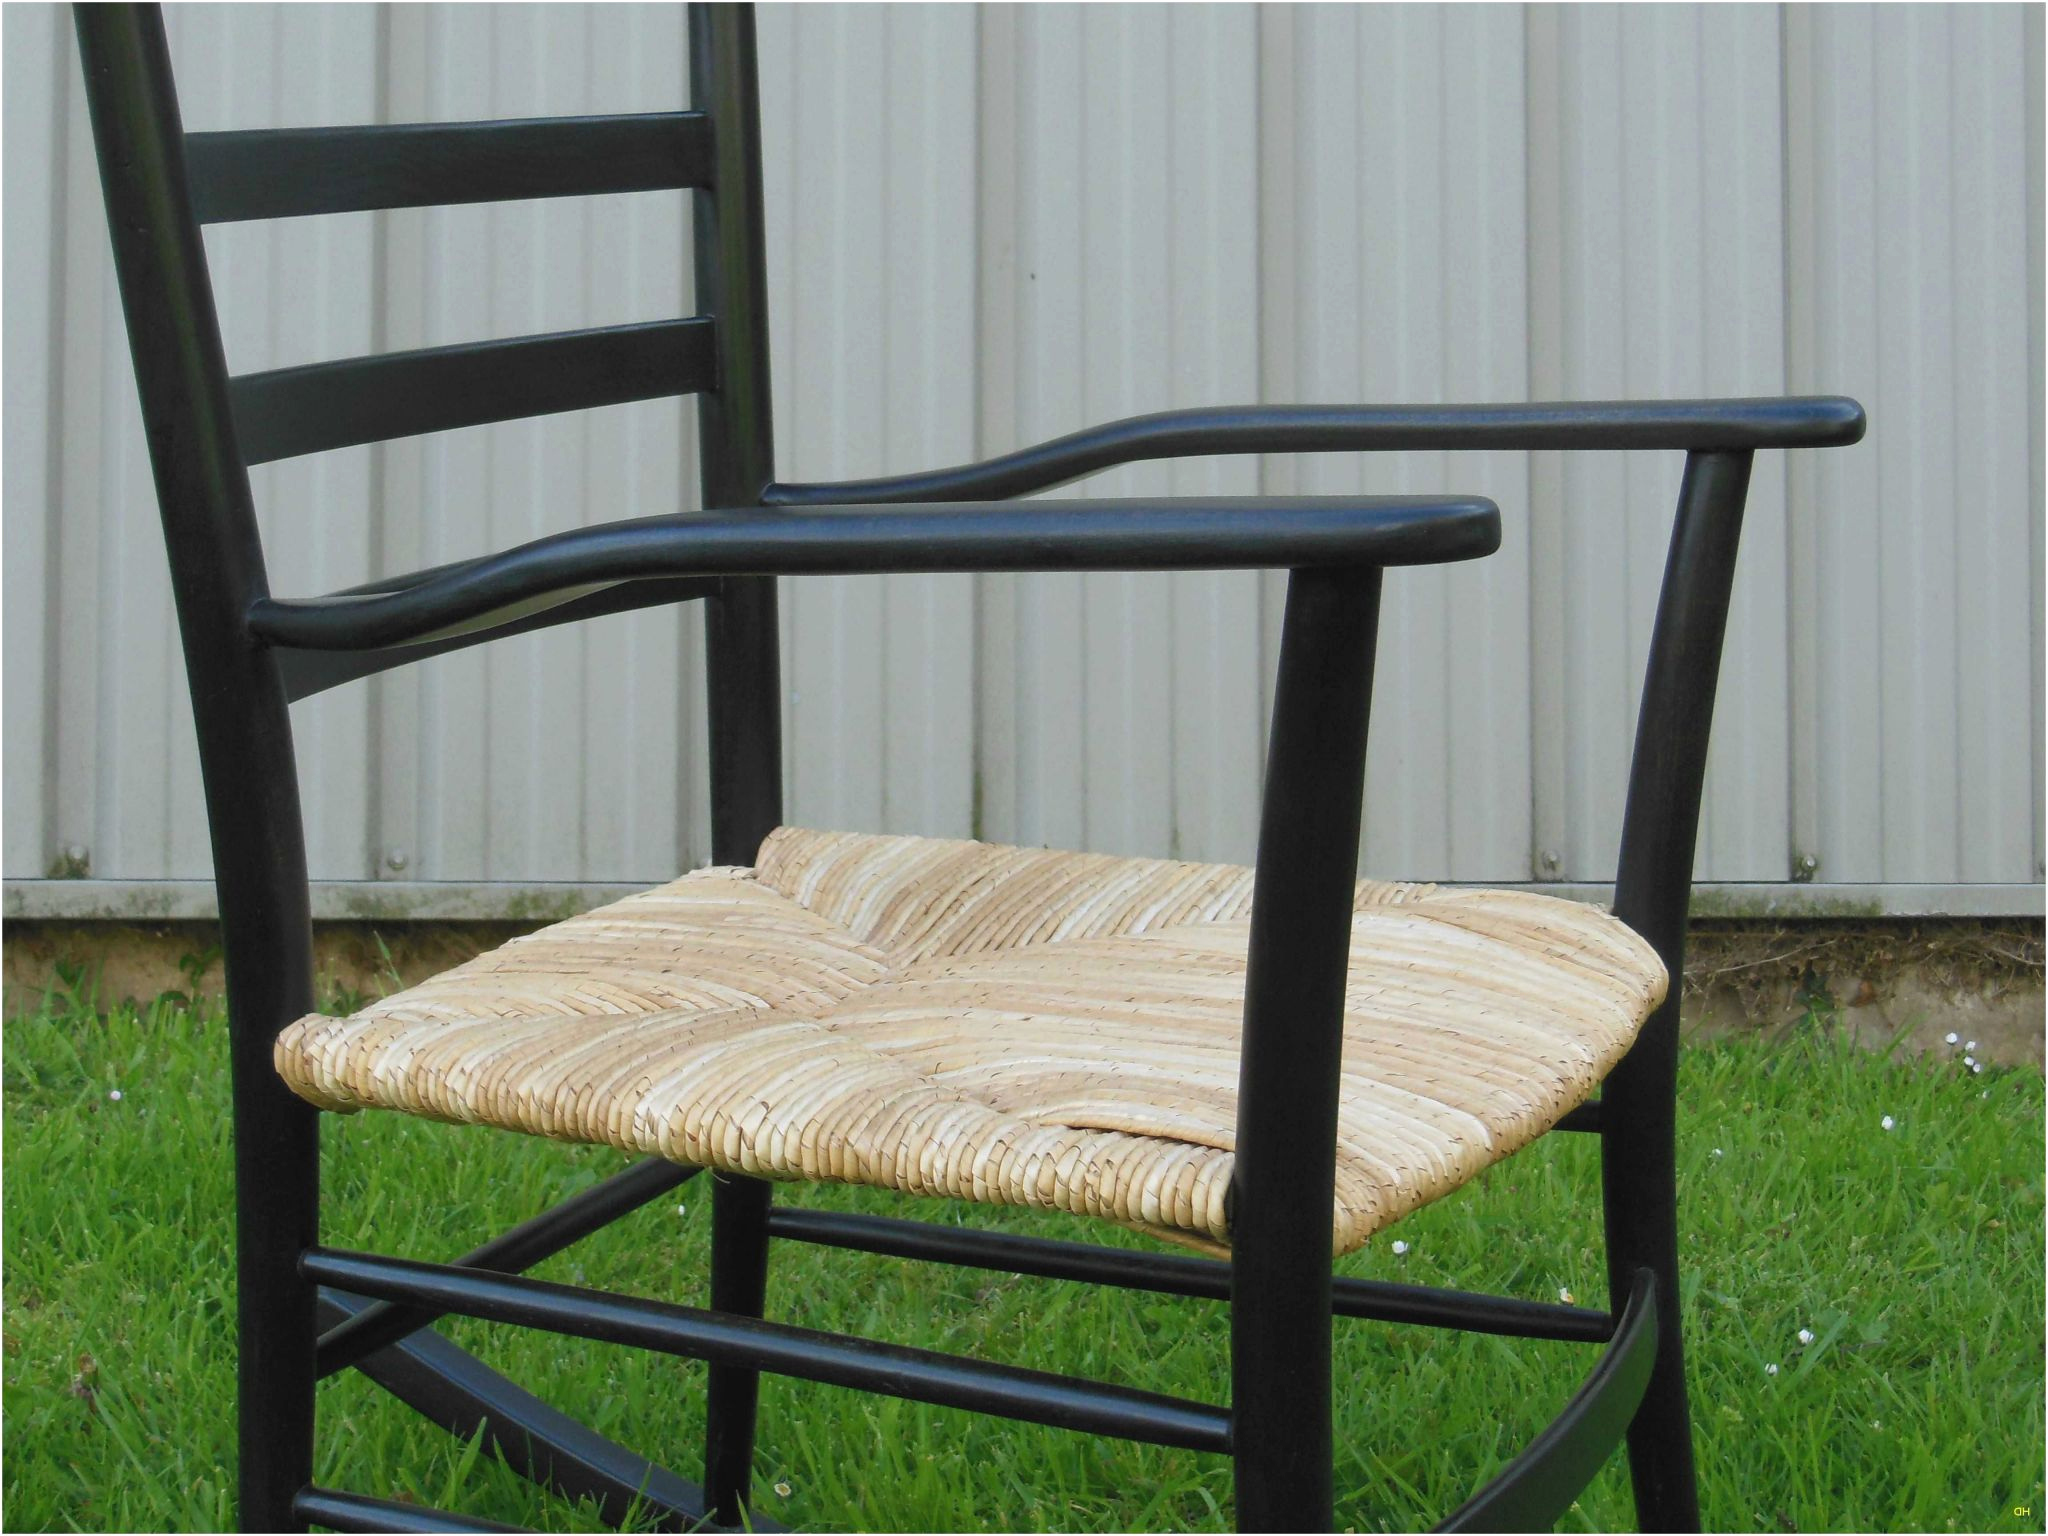 incroyable photos de castorama chaise unique chaise pliante de jardin castorama recursiveuniverse conception de of incroyable photos de castorama chaise